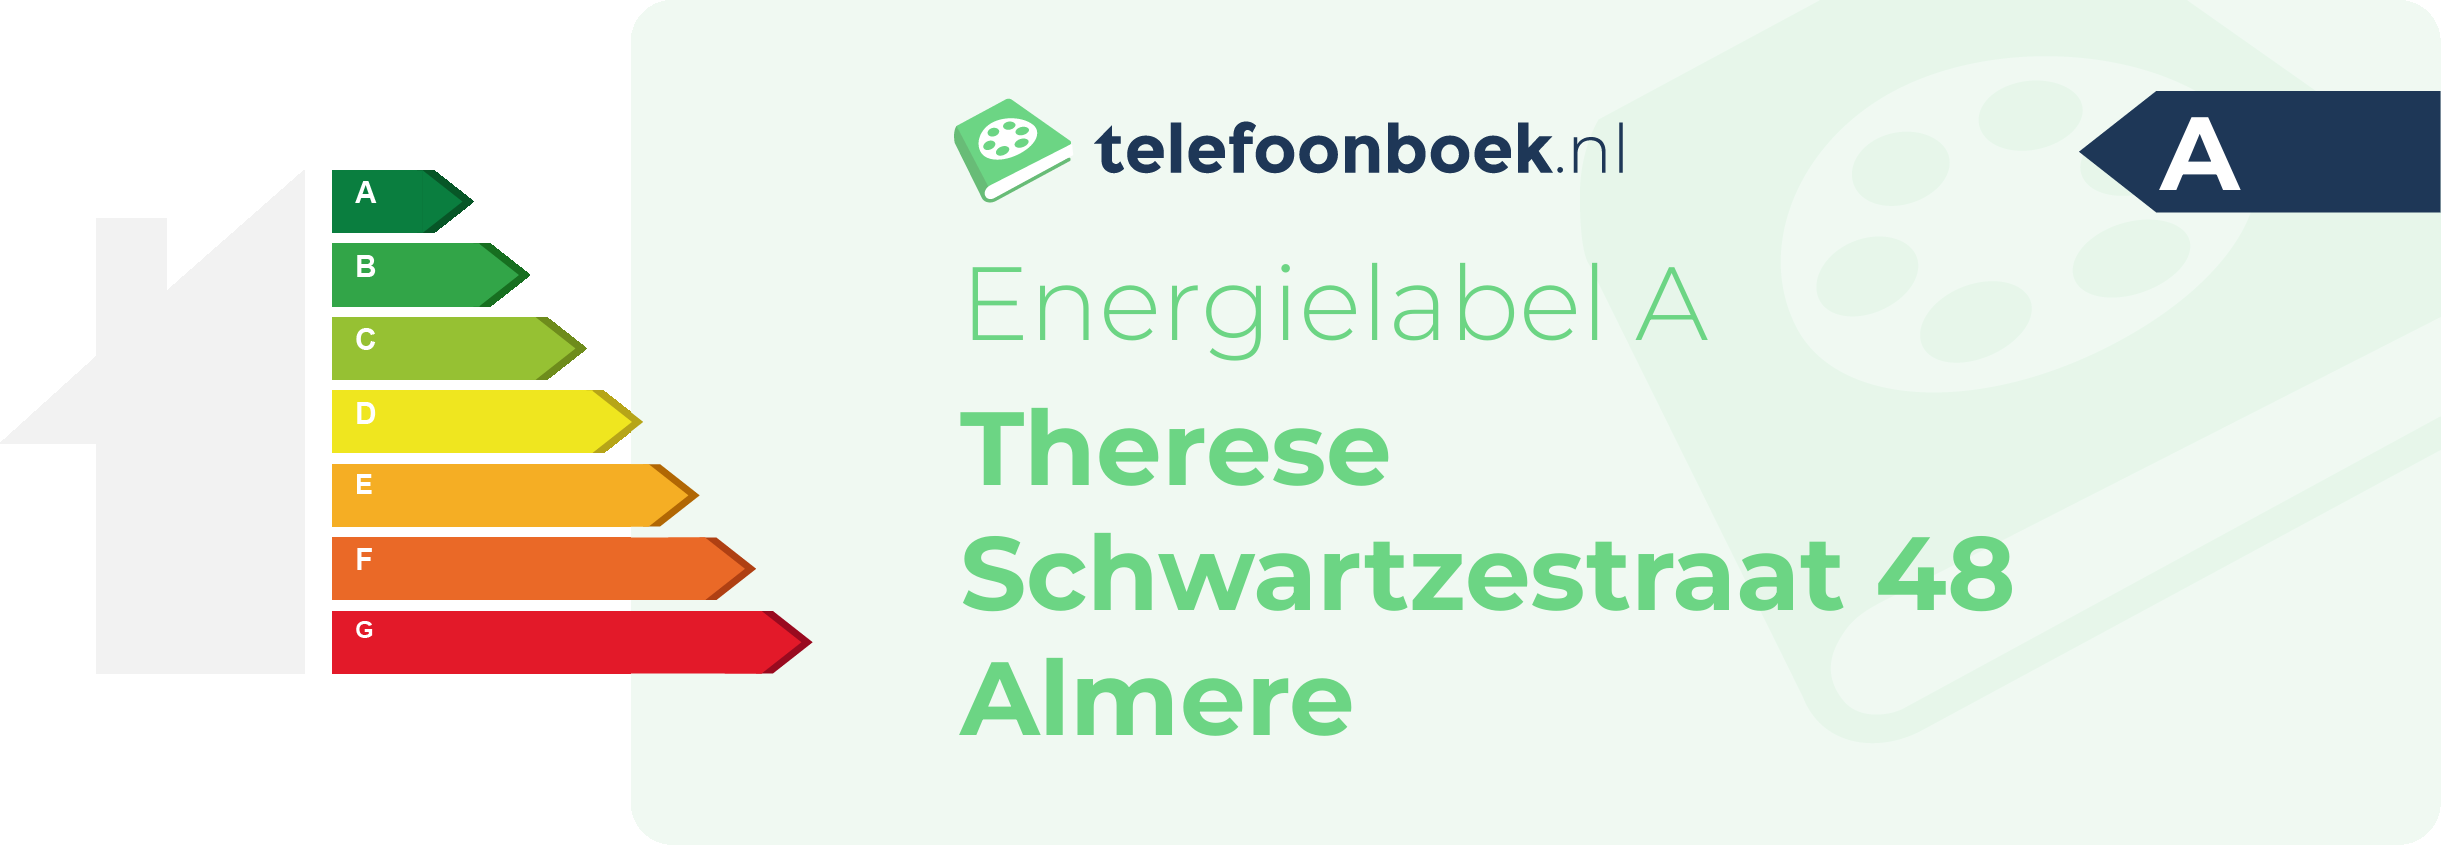 Energielabel Therese Schwartzestraat 48 Almere